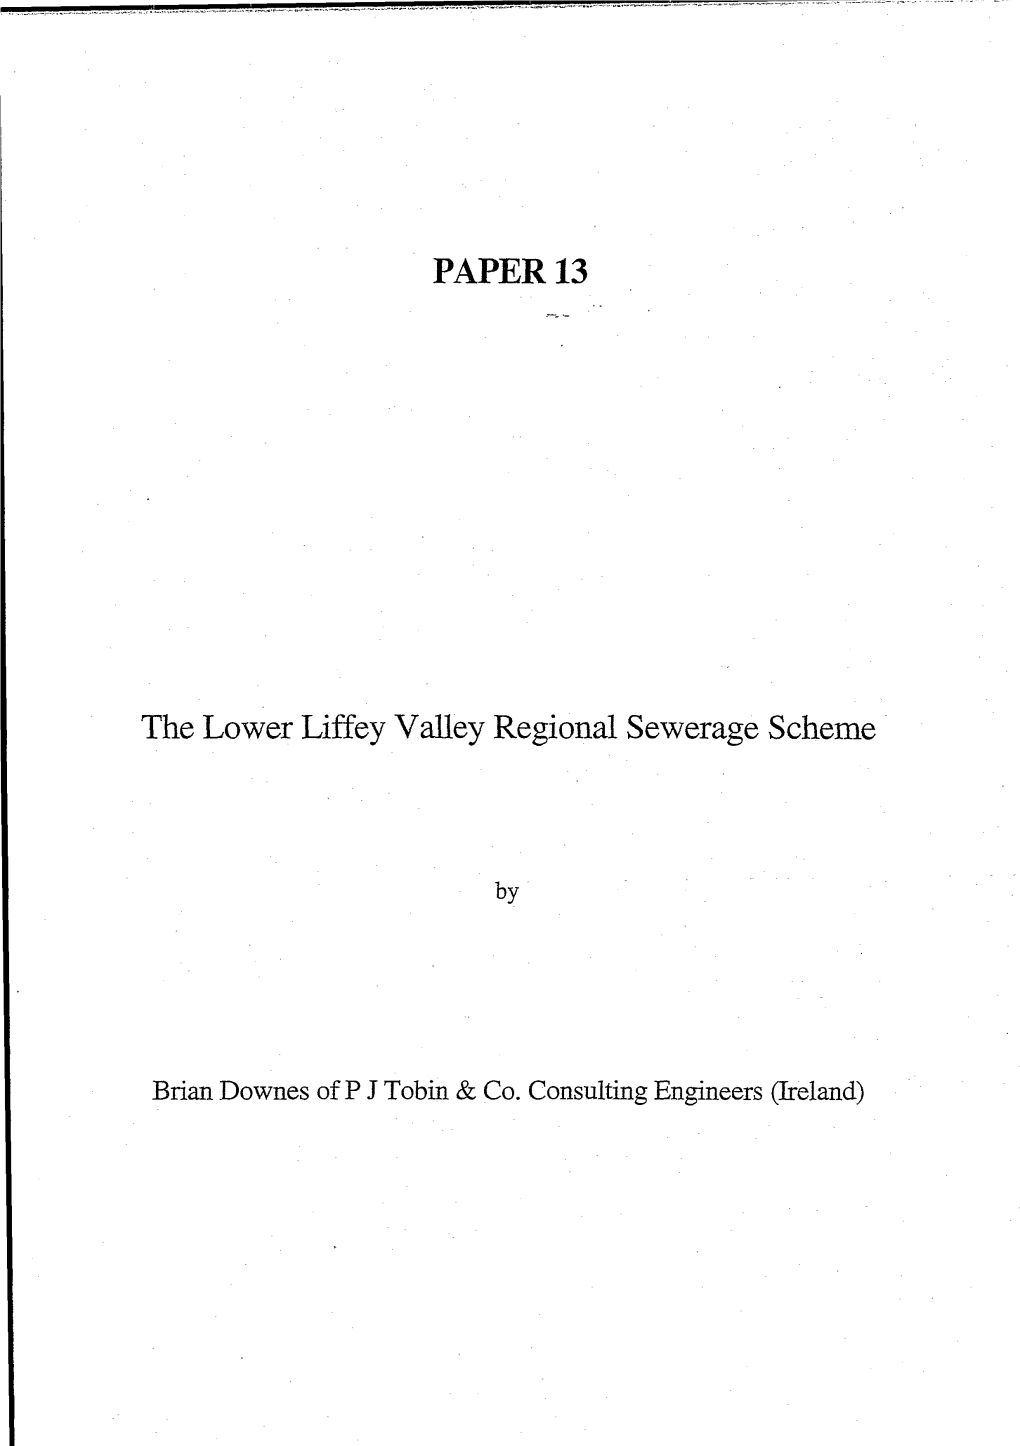 PAPER 13 the Lower Liffey Valley Regional Sewerage Scheme